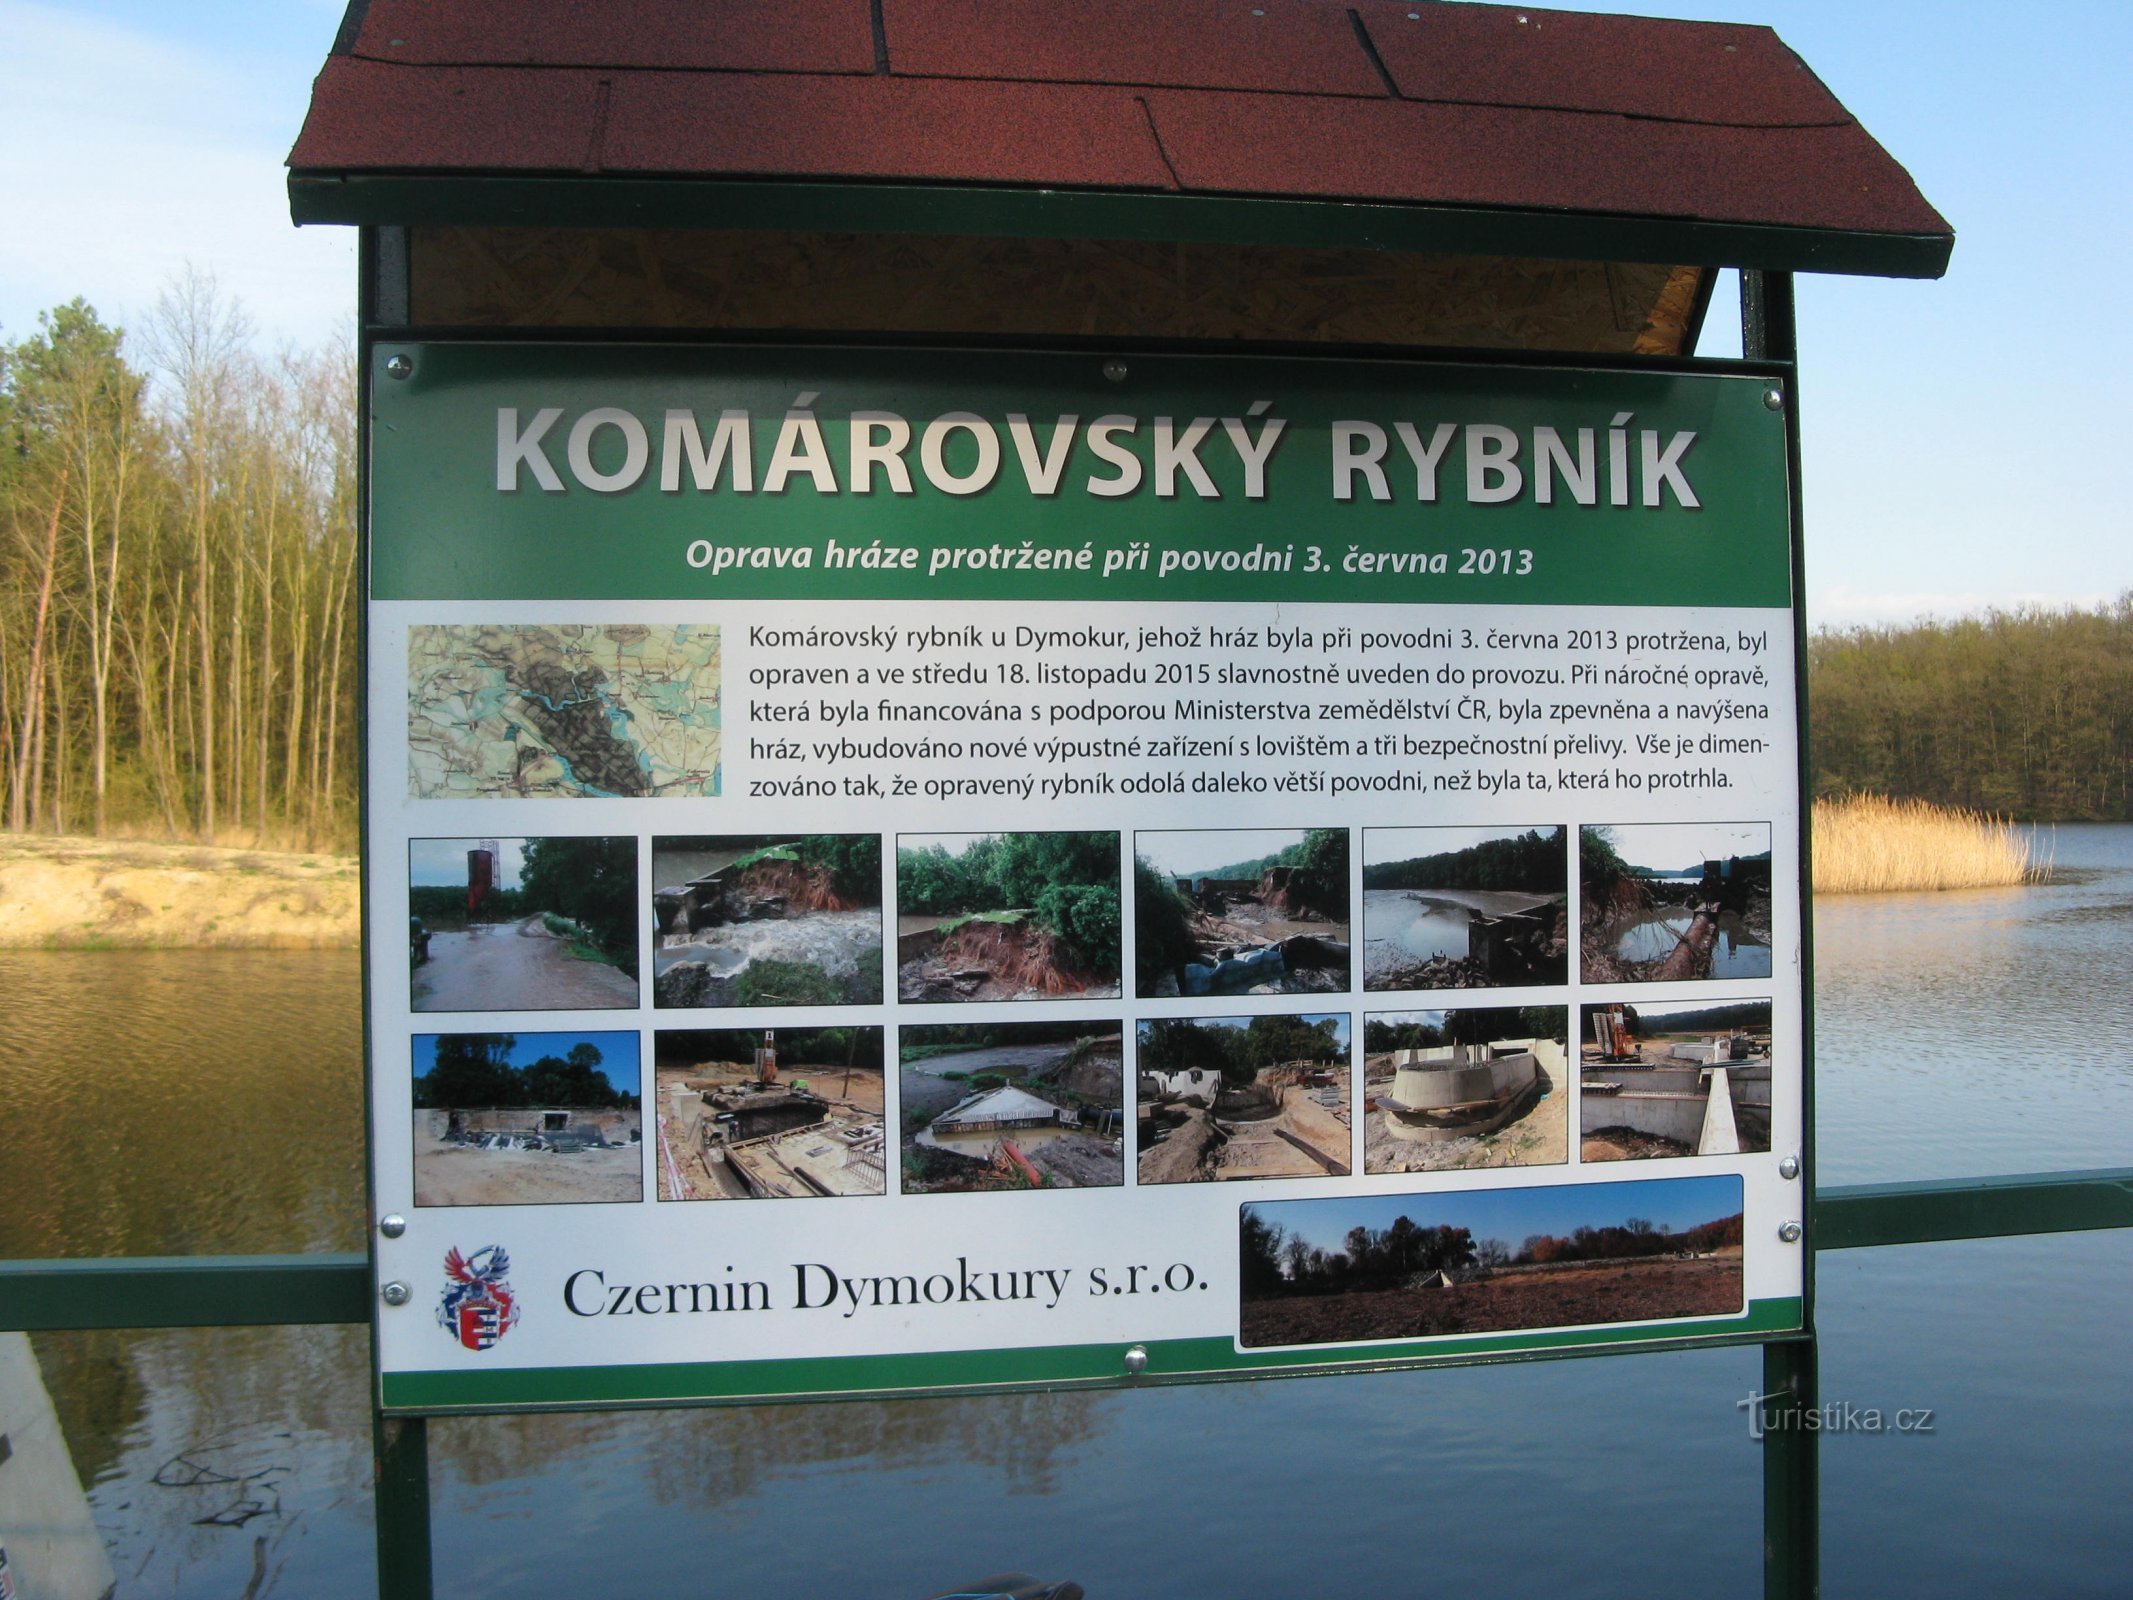 Staw Komárovský w pobliżu Svídnice w Nymburku